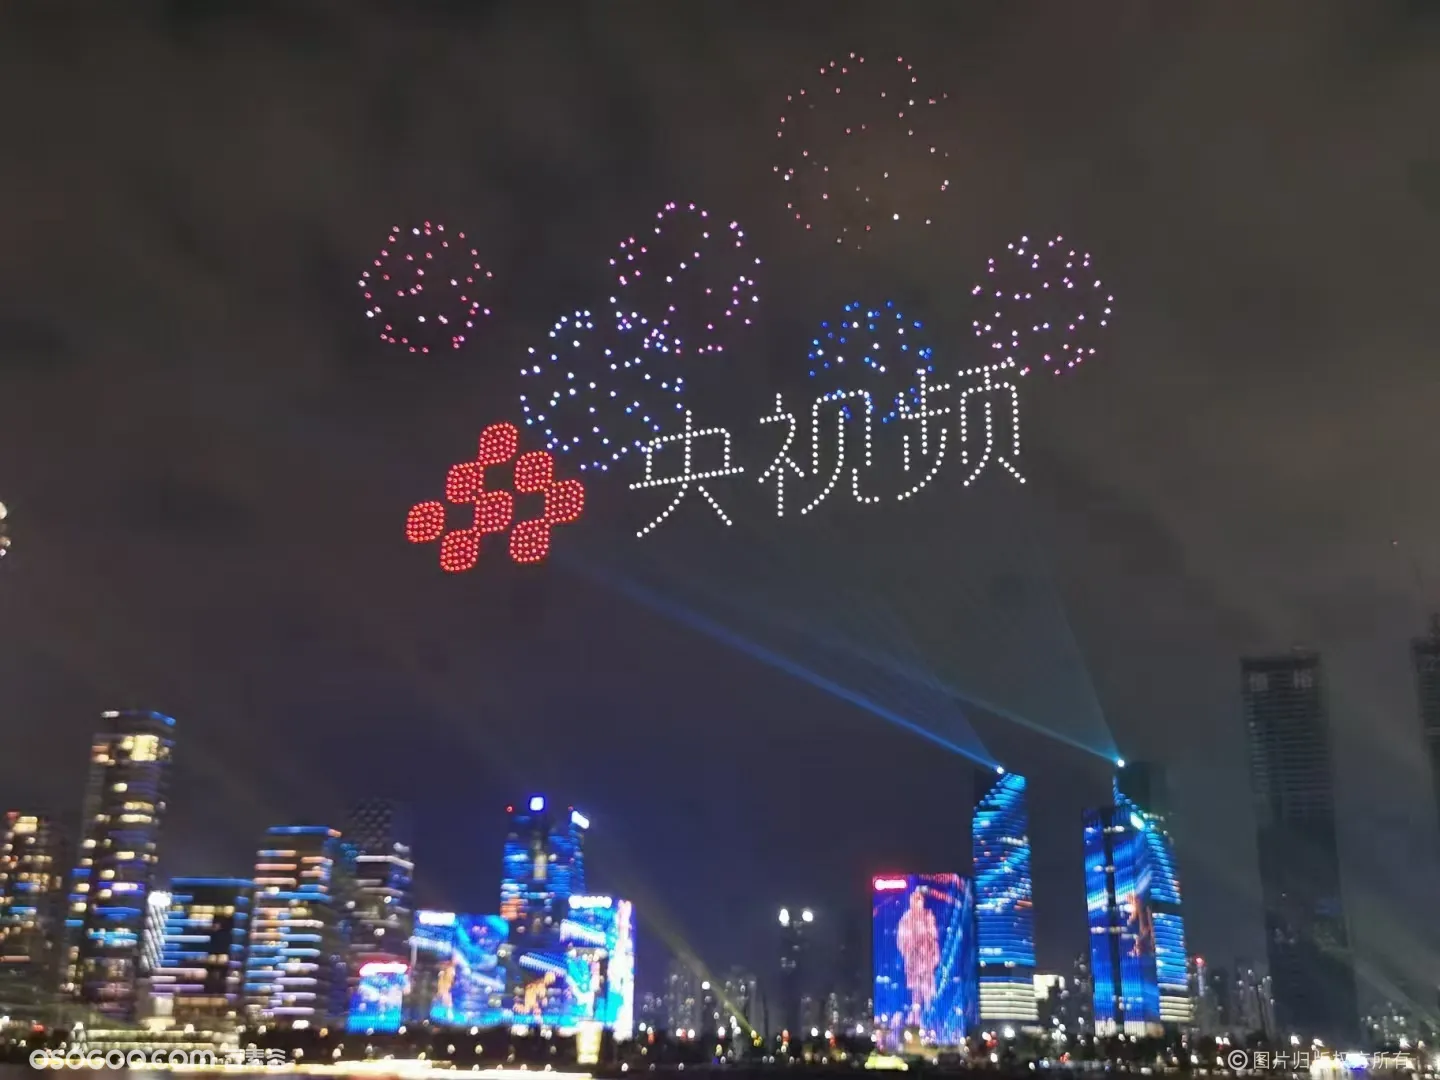 无人机表演，深圳庆祝建党100周年|资源-元素谷(OSOGOO)